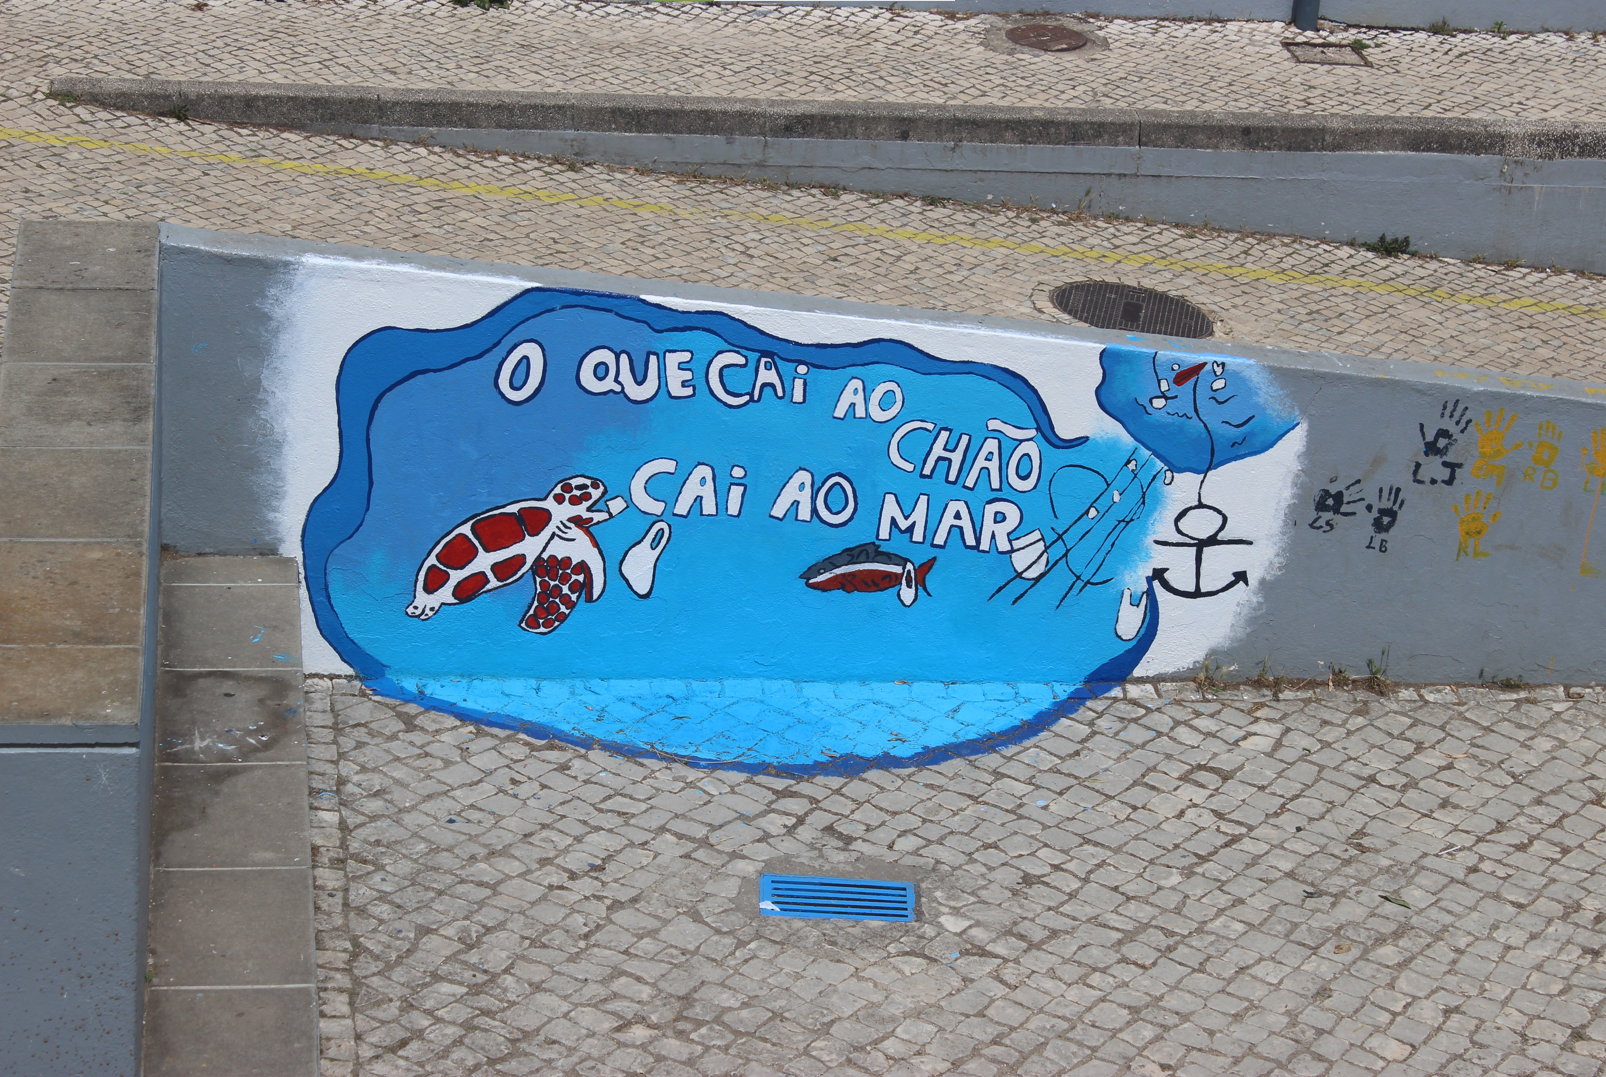 O que cai ao chão cai ao mar - Ferreira de Castro